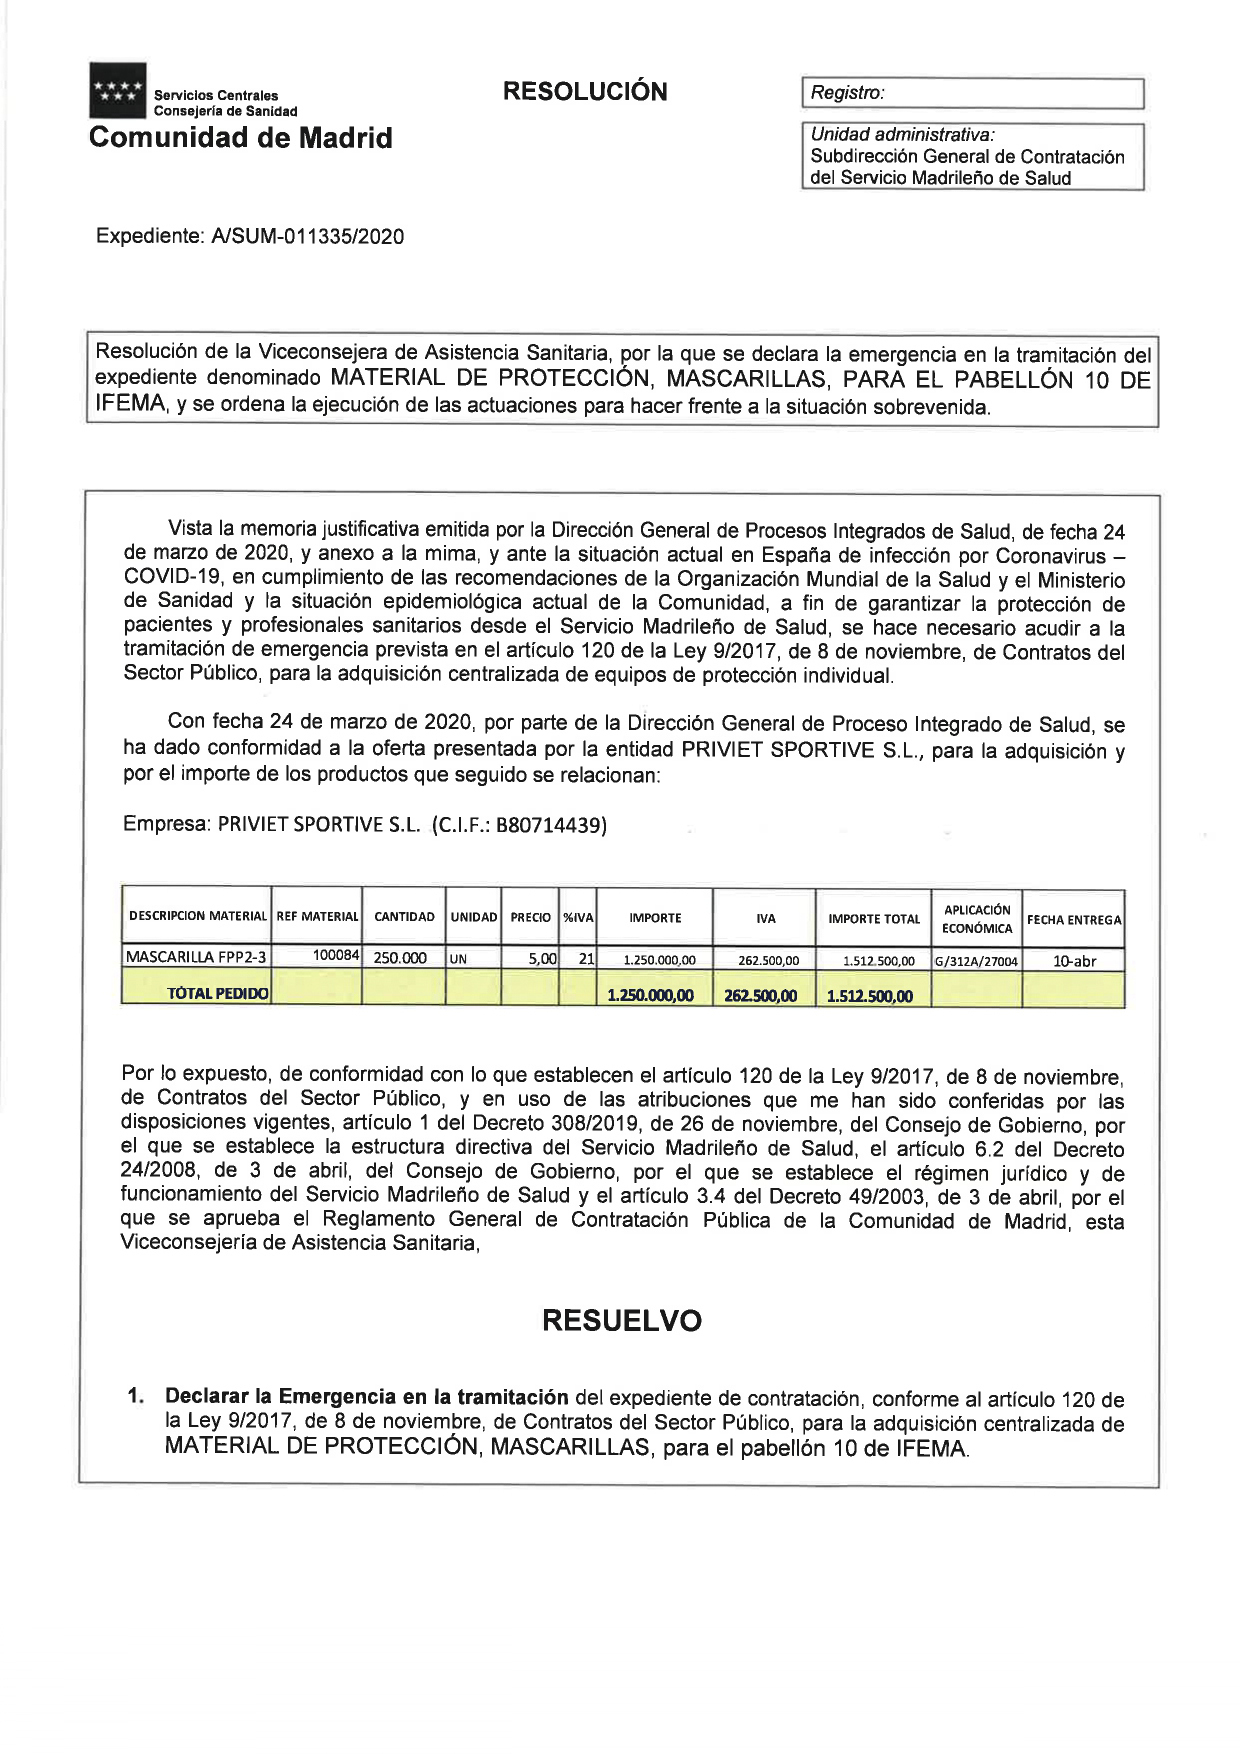 Detalle del contrato a la empresa Priviet Sportive, S.L.